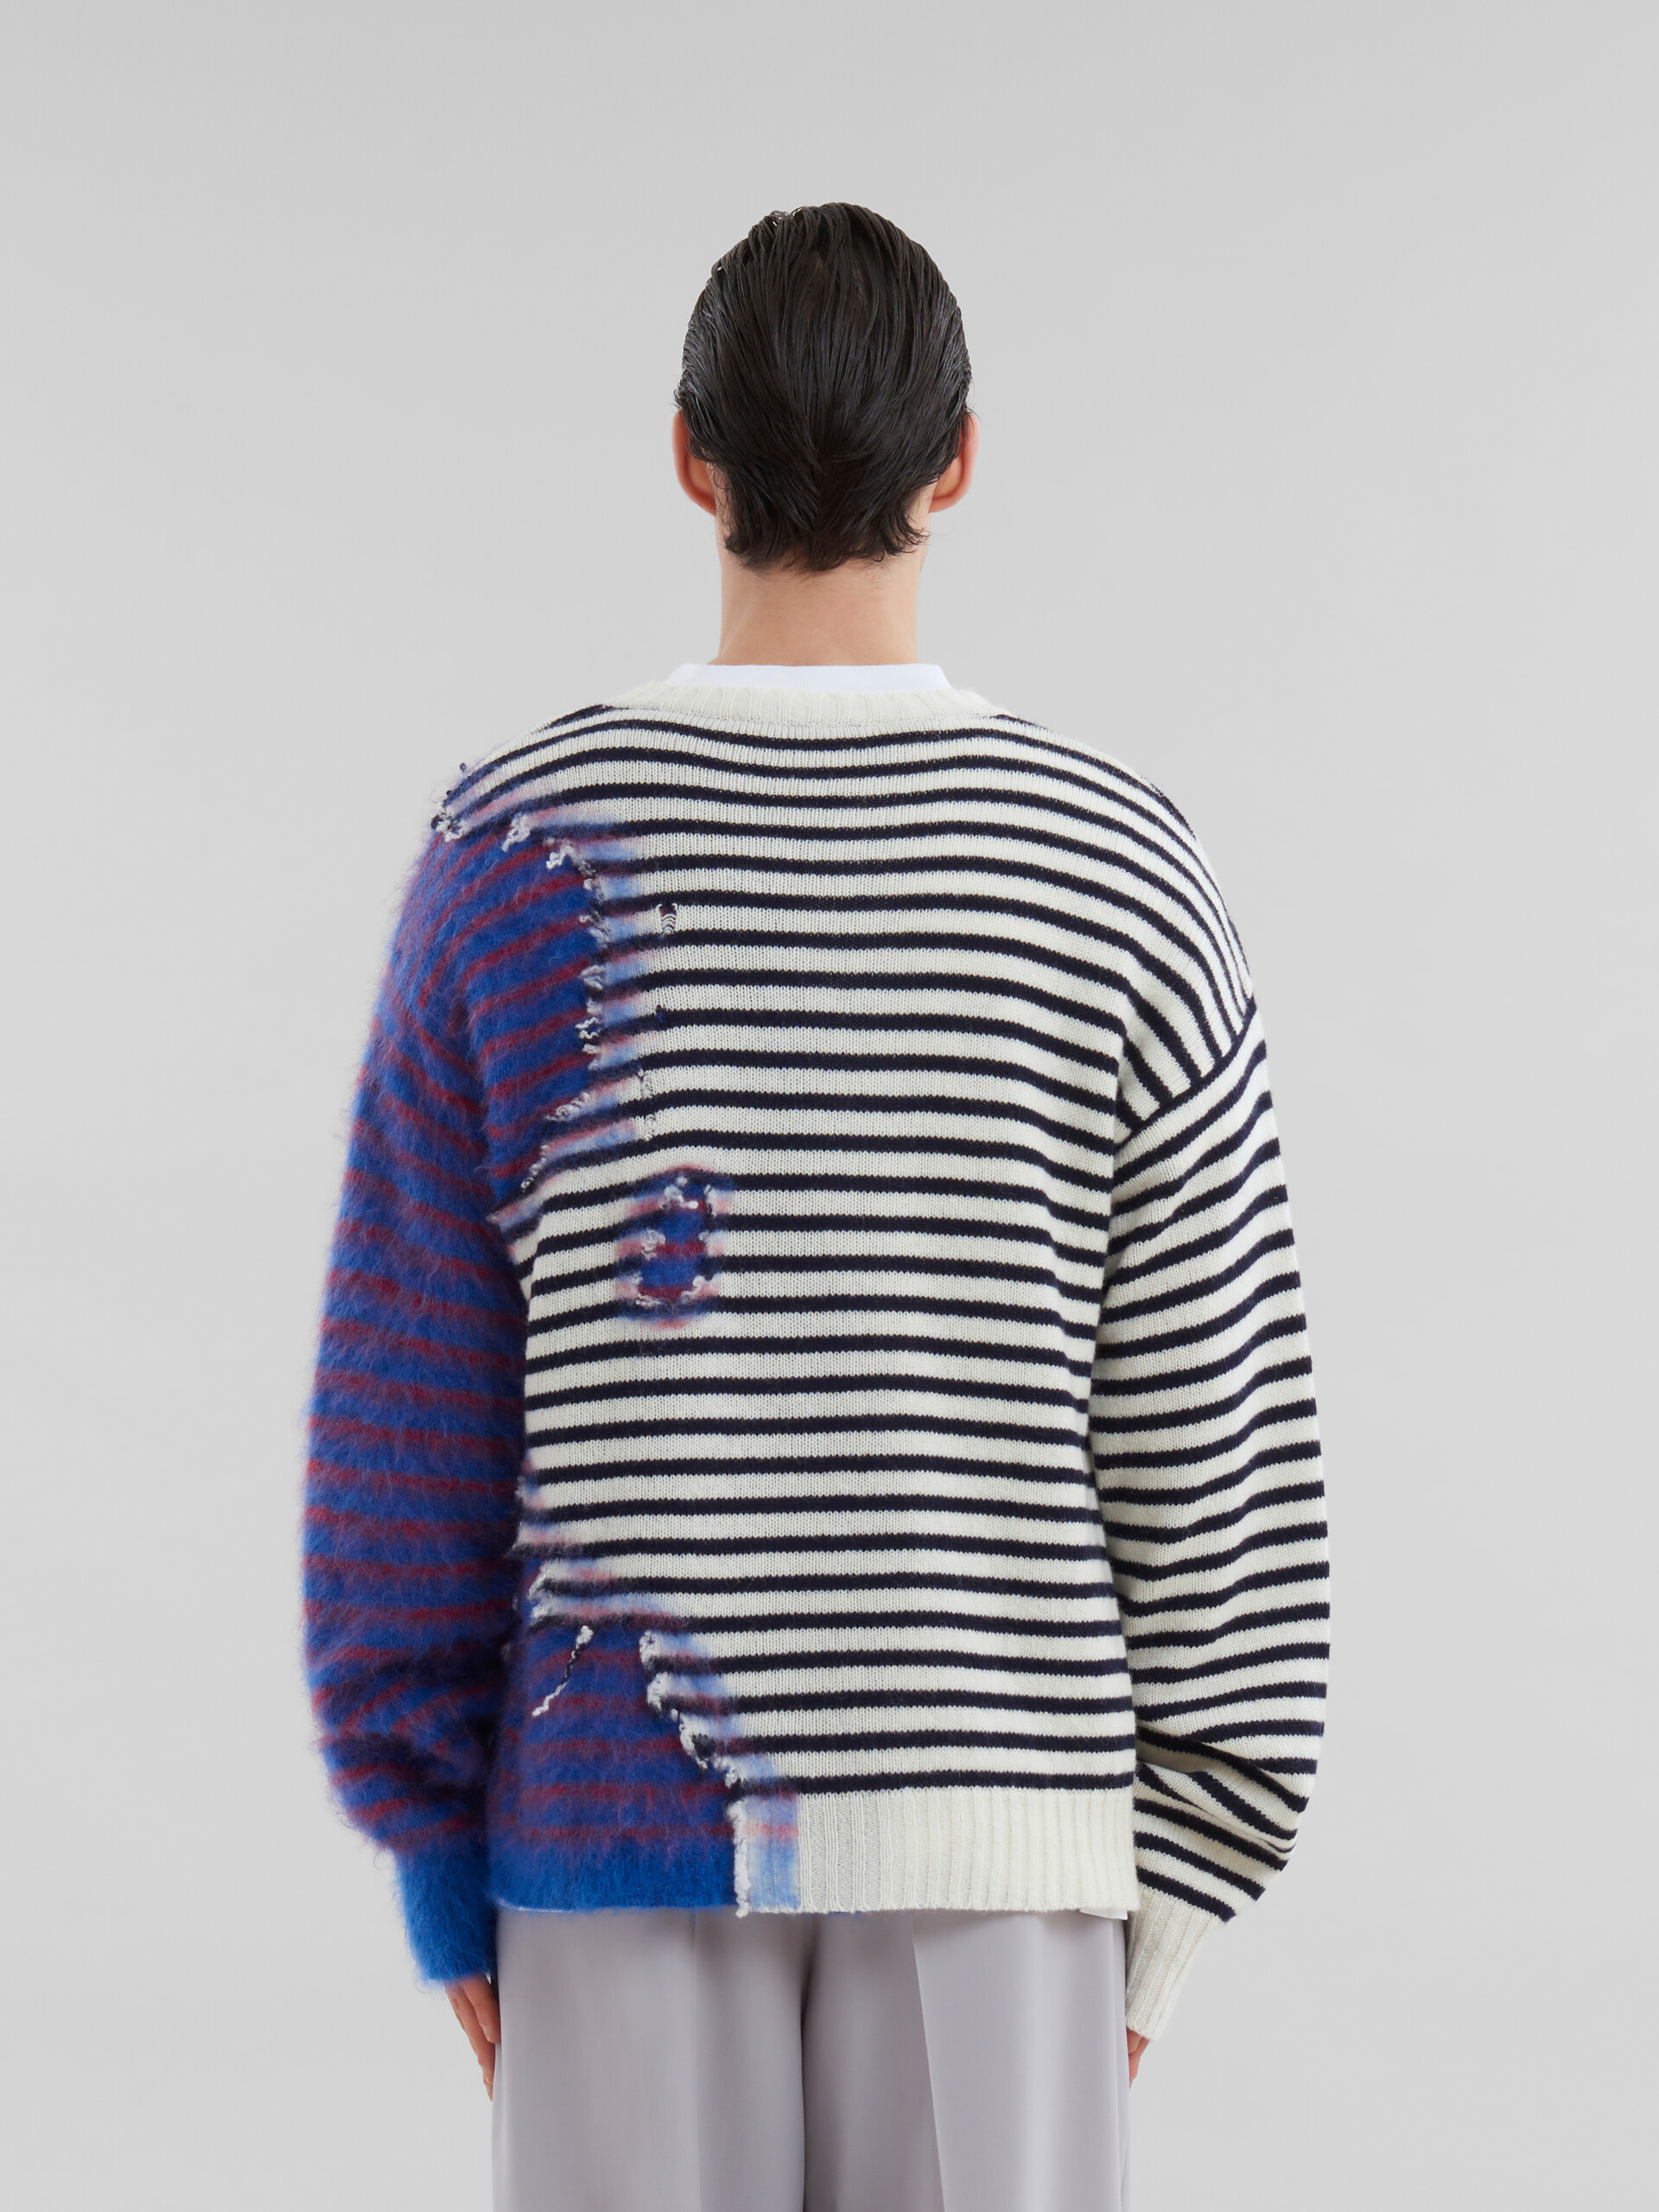 Jersey dos en uno multicolor de lana y mohair a rayas - jerseys - Image 3